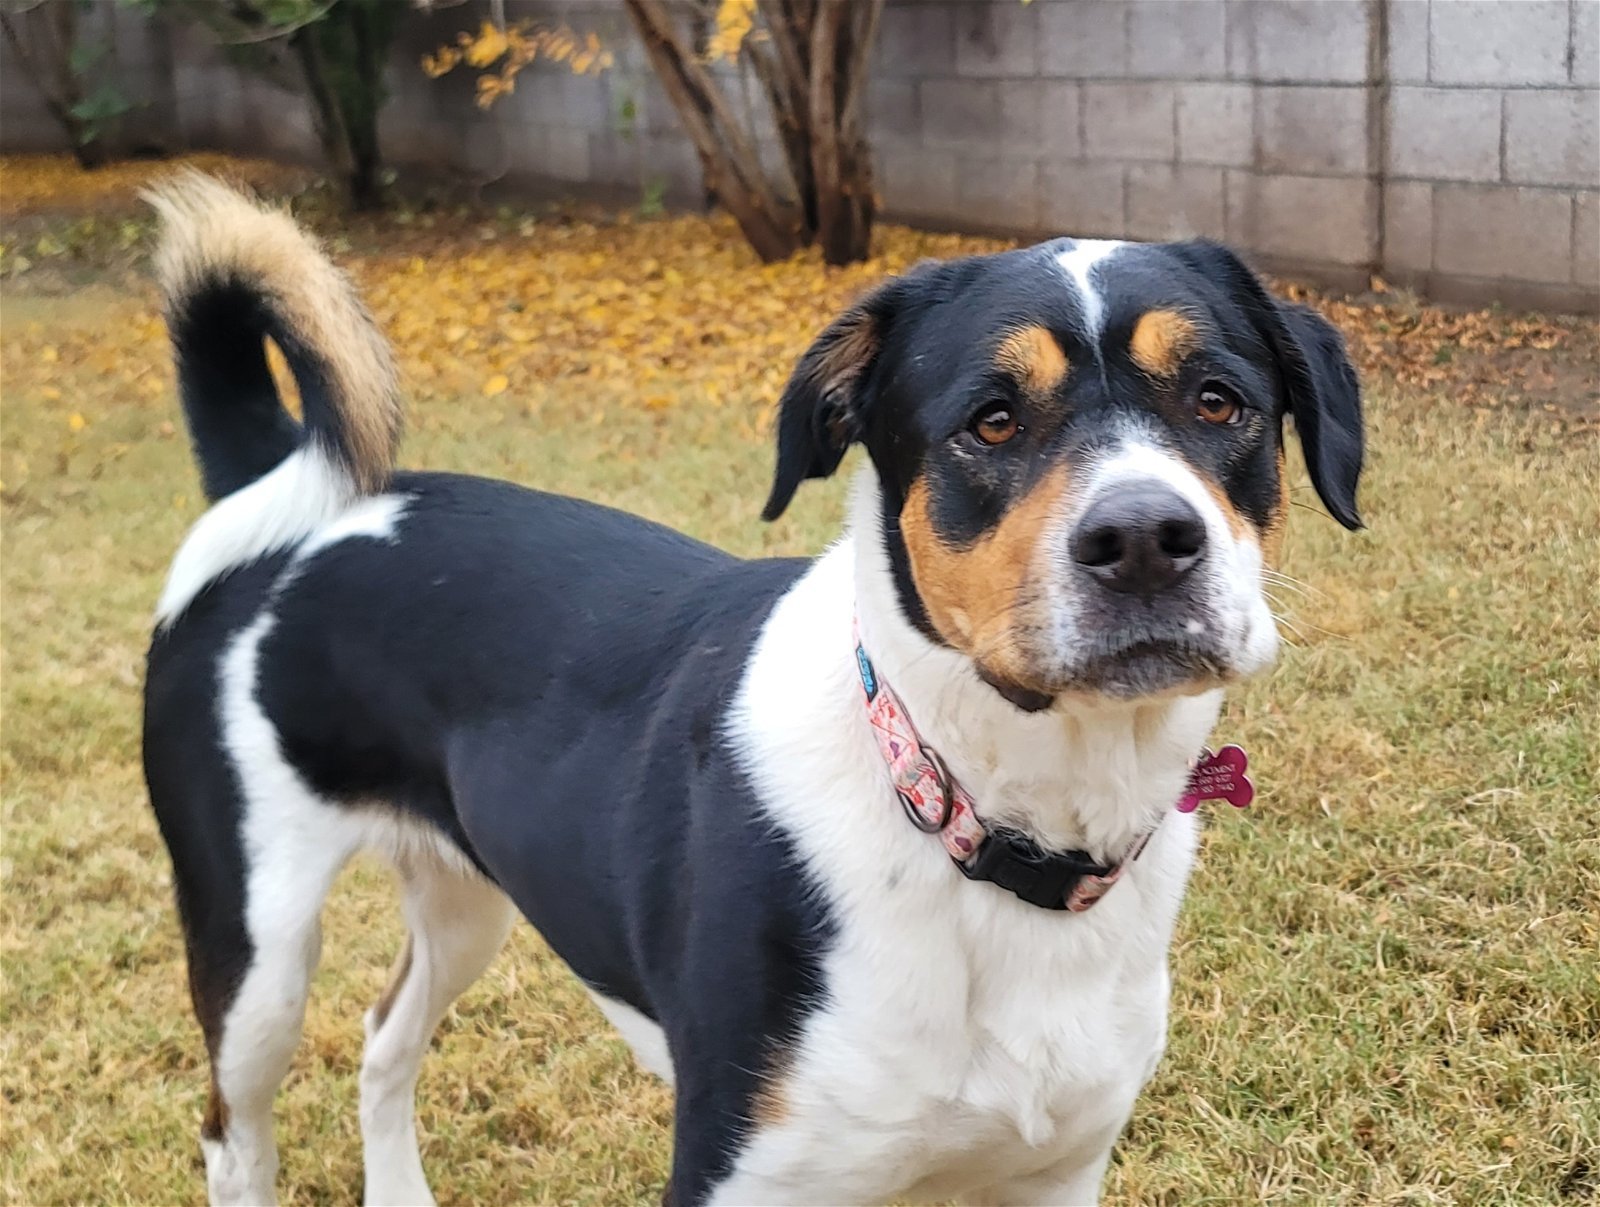 grit tiltrækkende tildeling Dog for adoption - Panda, a Rottweiler & Border Collie Mix in Scottsdale,  AZ | Petfinder